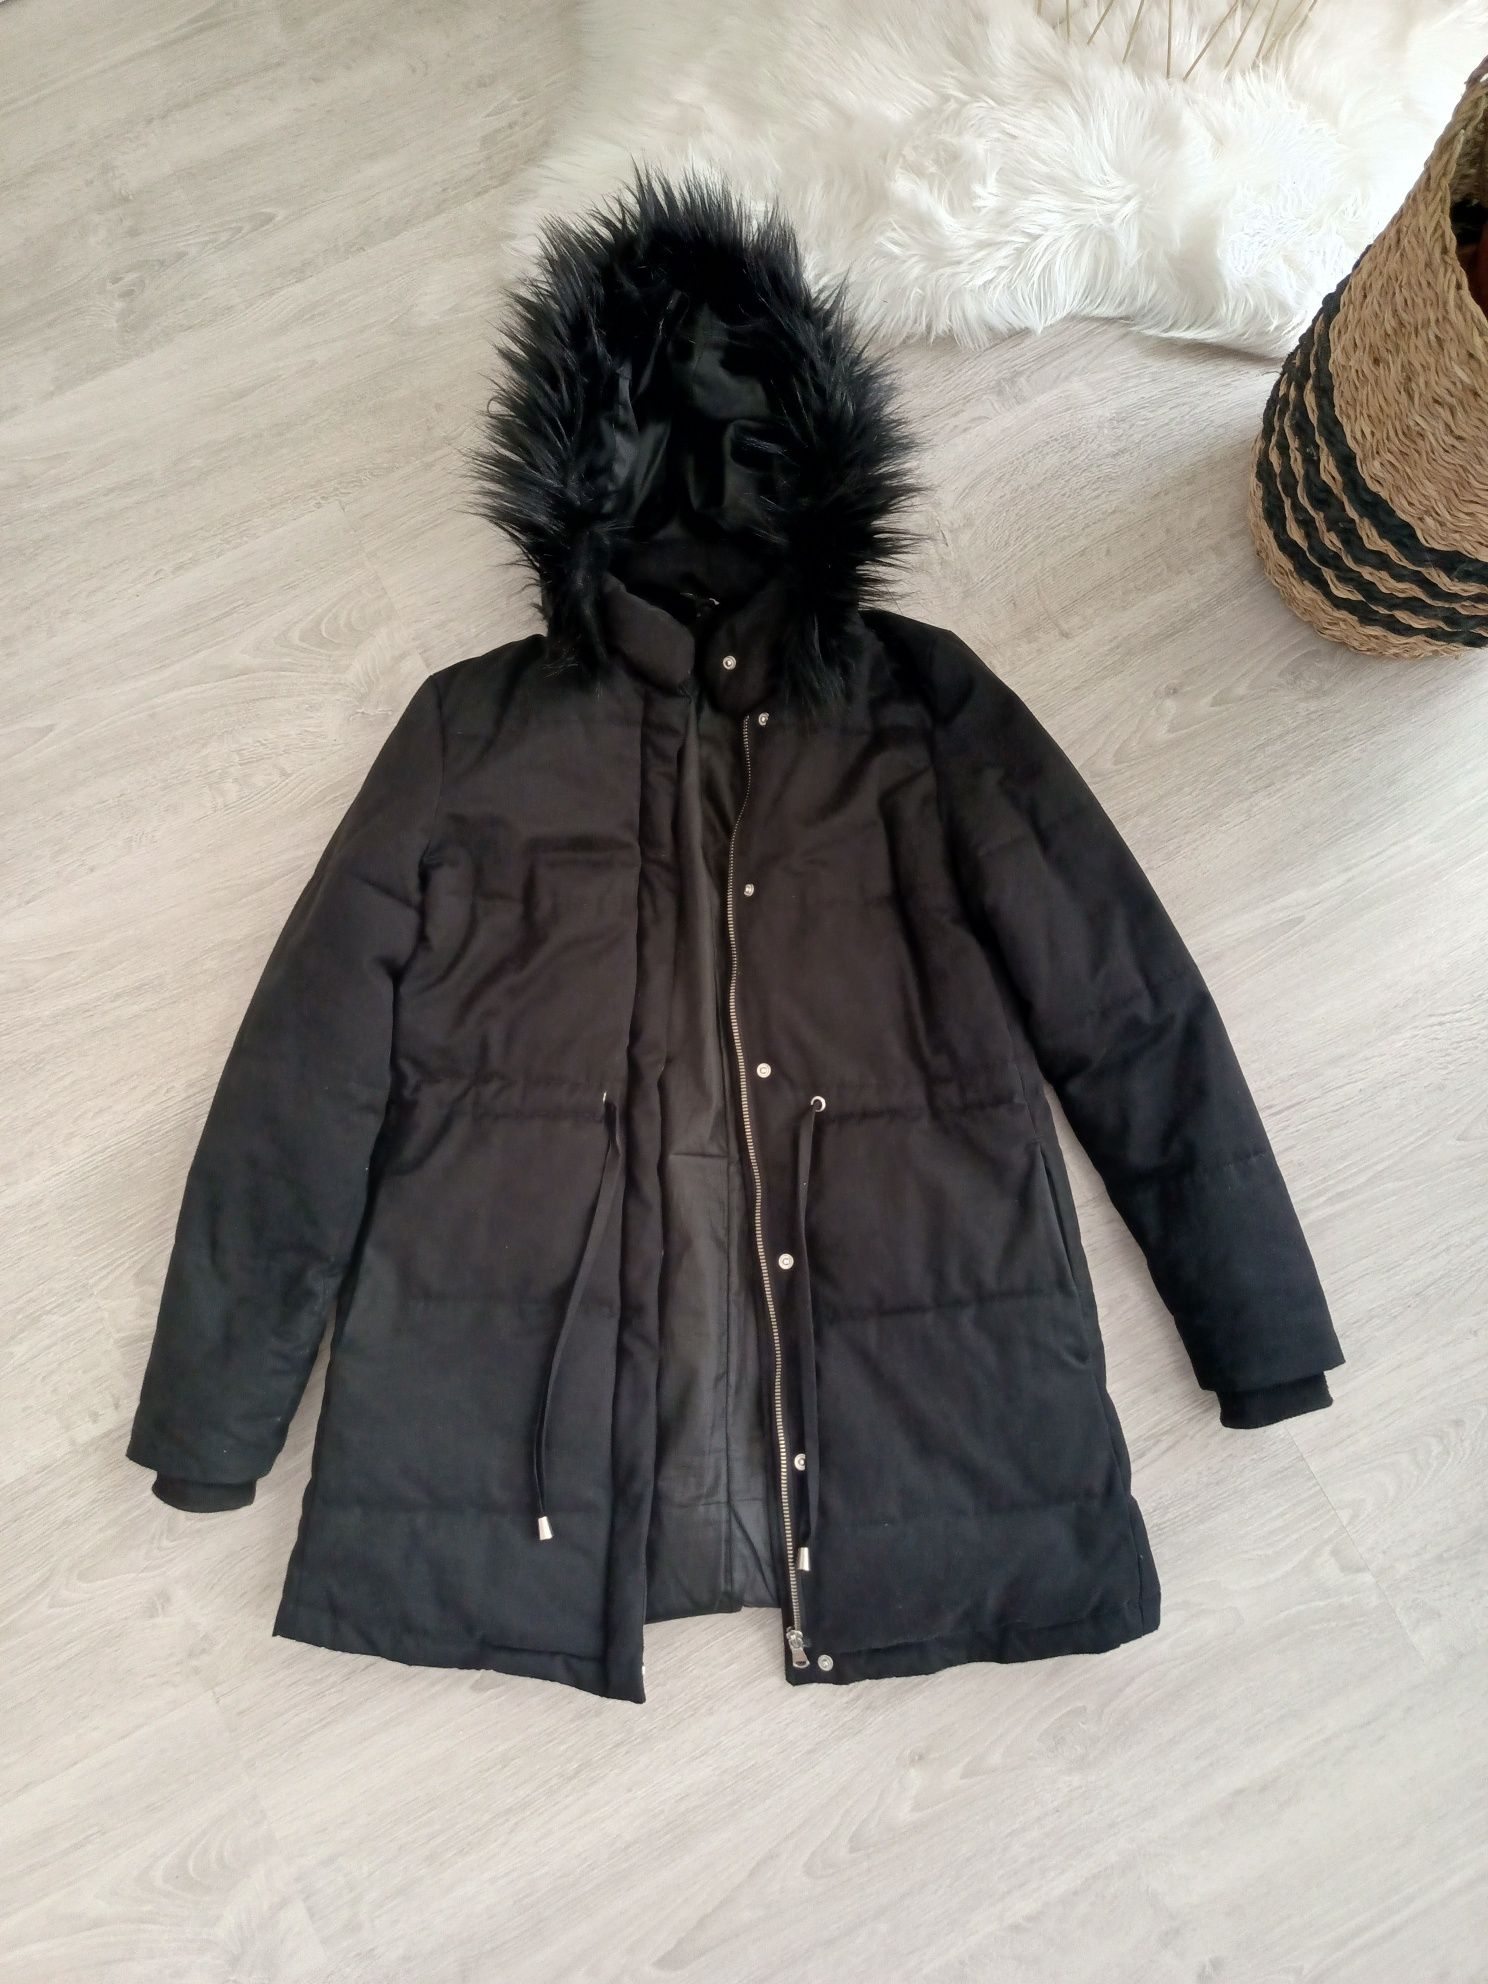 Czarny puchowy płaszcz płaszczyk zimowy z kapturem parka H&M 36 S